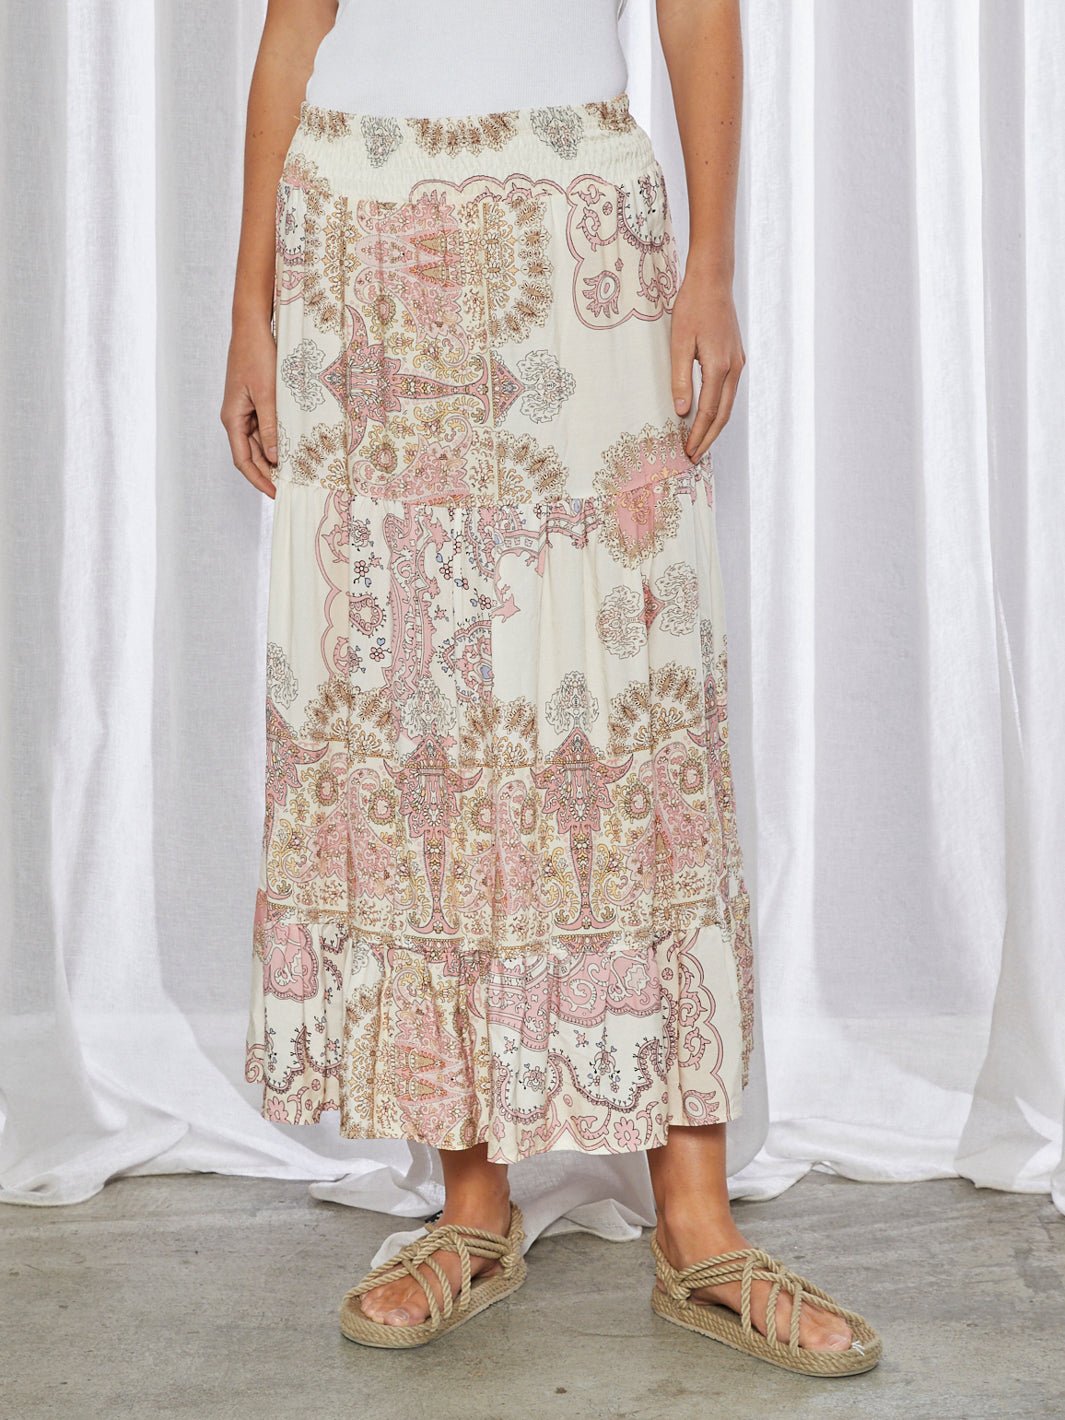 All Week Gunette long skirt rosa paisley print - Online-Mode